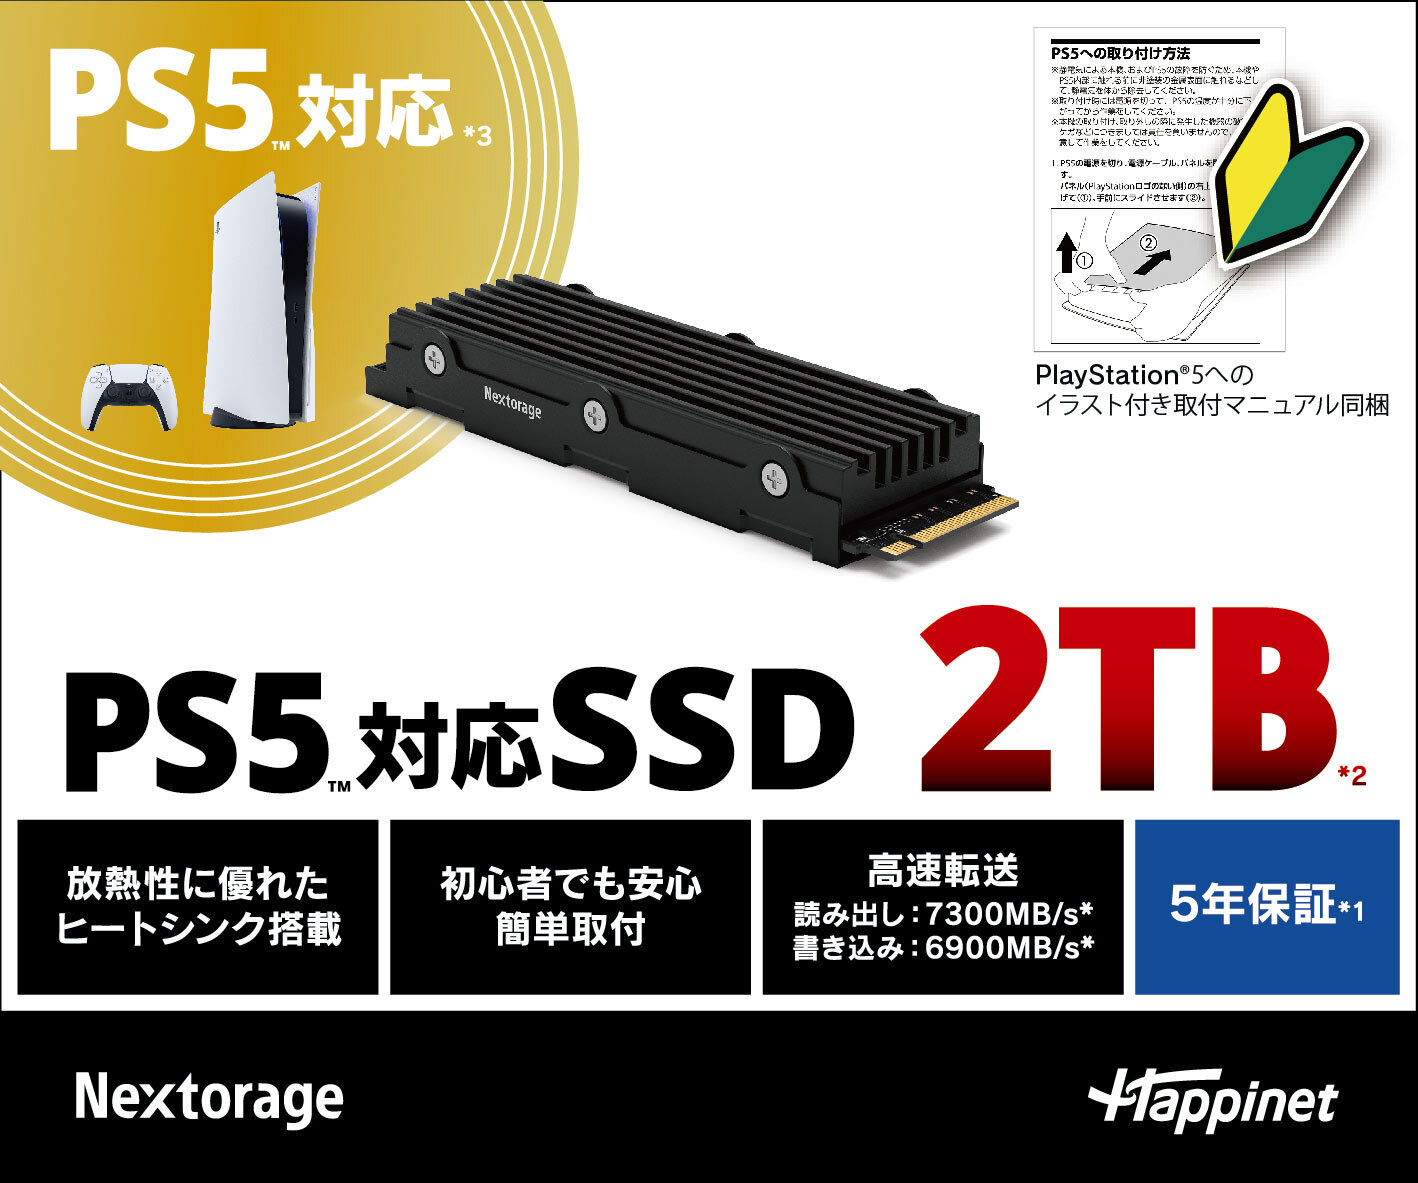 PS5対応の内蔵SSDを9月下旬に発売！M.2 2280 NVMe SSDの1TB/2TBモデル 